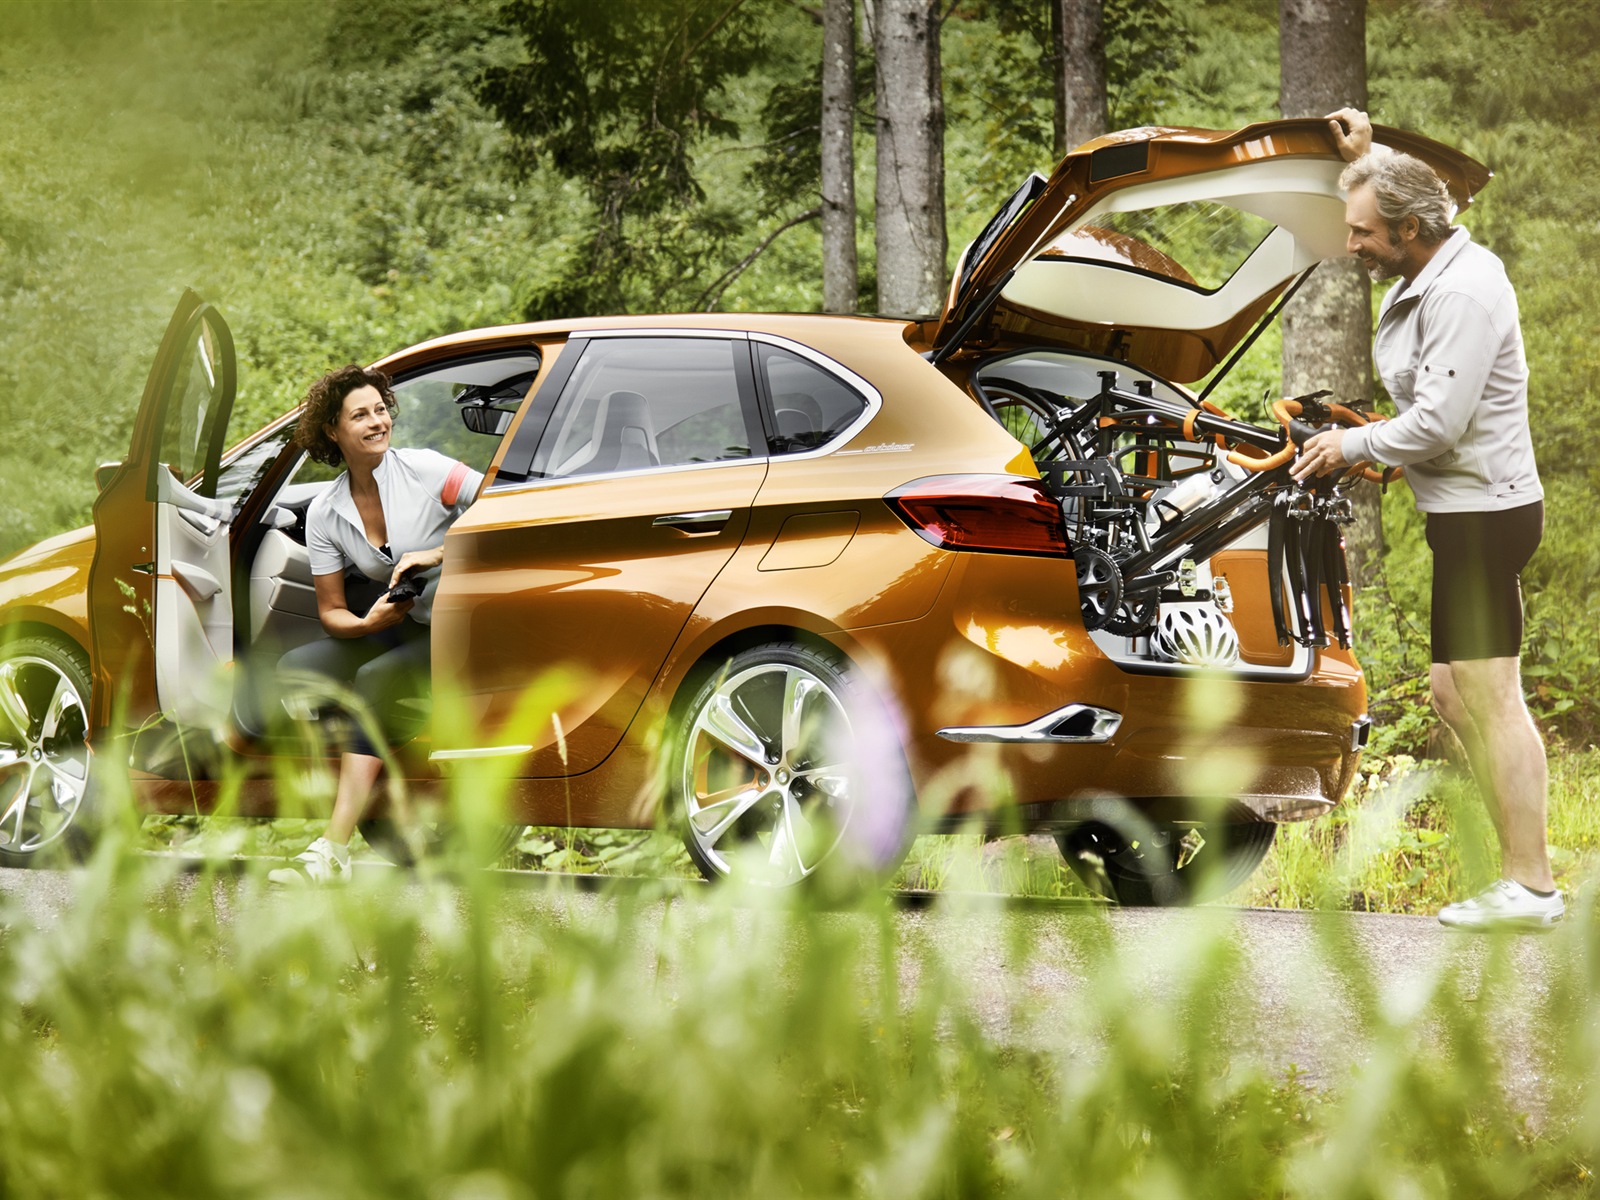 2013 BMW Concept activos Tourer fondos de pantalla de alta definición #9 - 1600x1200